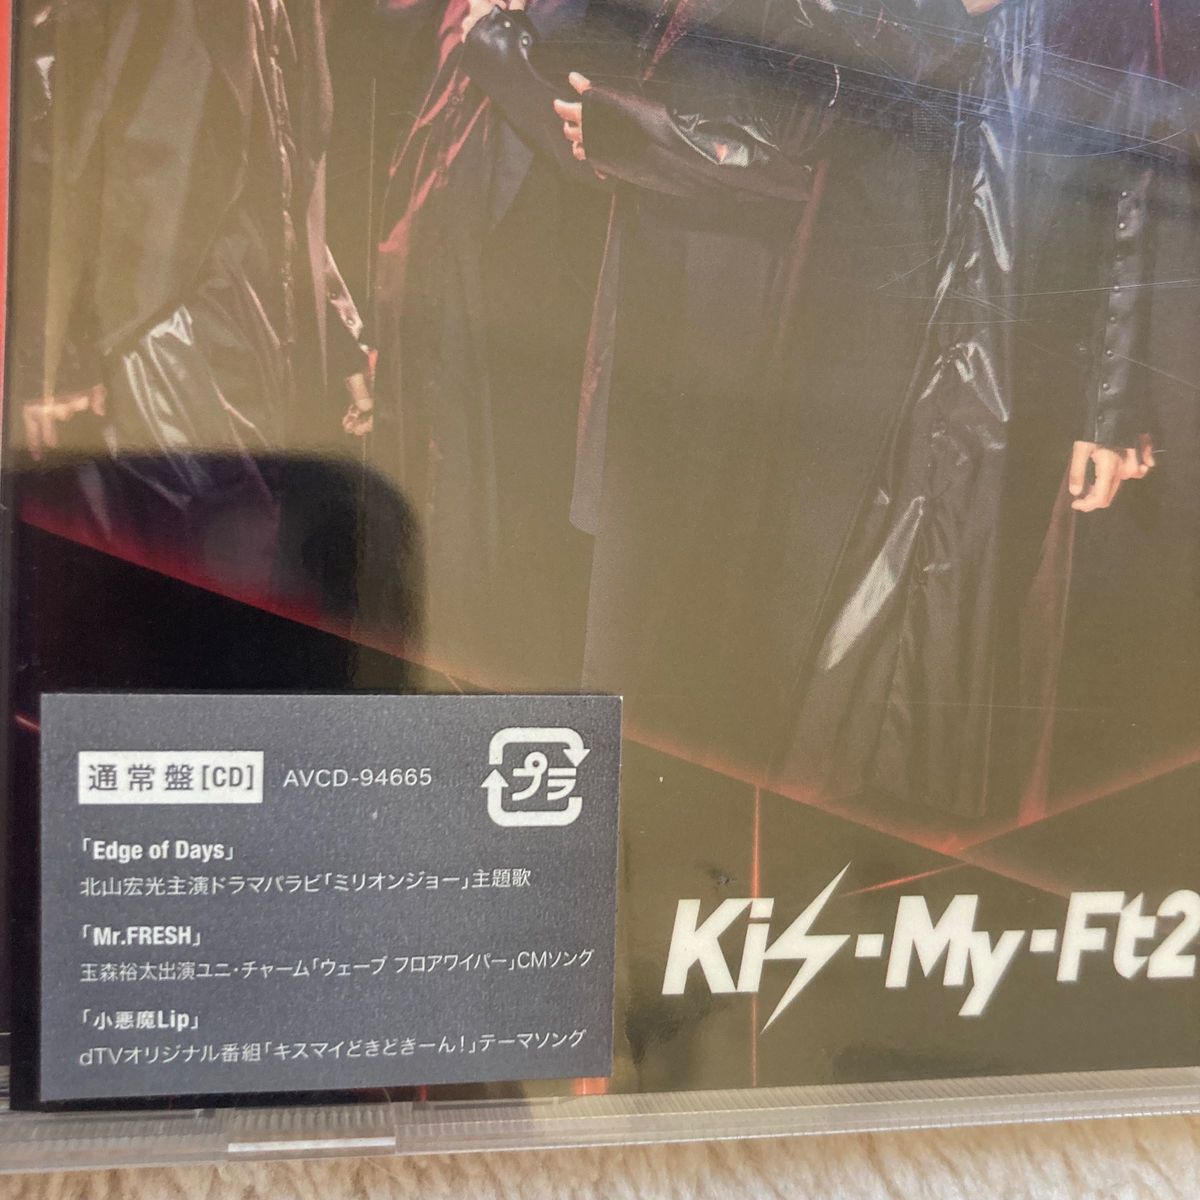 Kis-my-ft2 Edge of Days CD(通常版、初回盤A、B)合計3枚